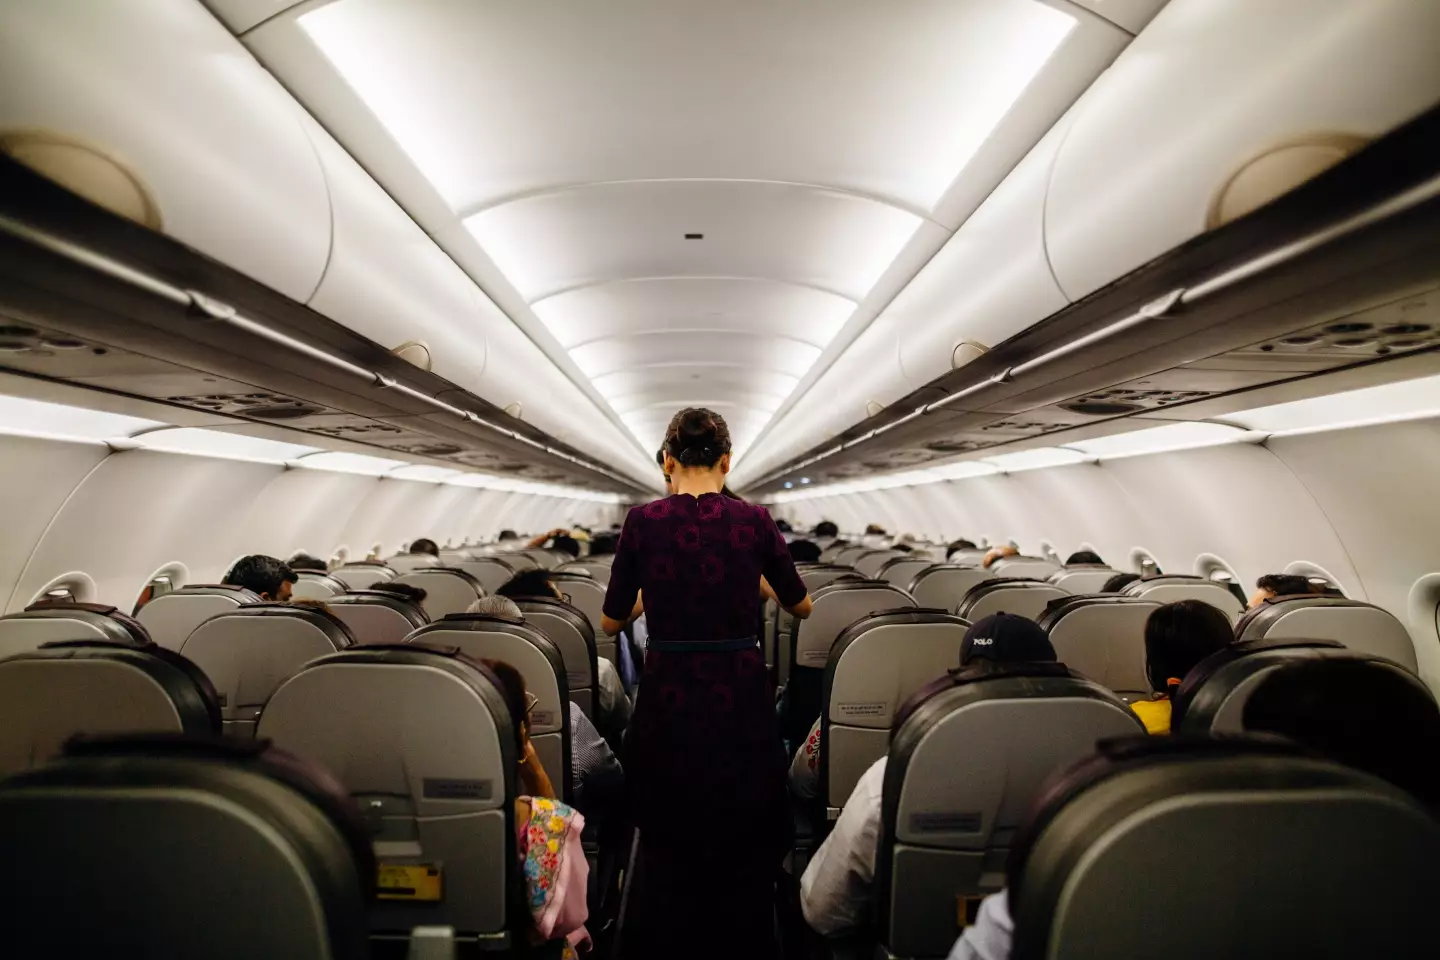 Flight attendants do a lot on board the plane.